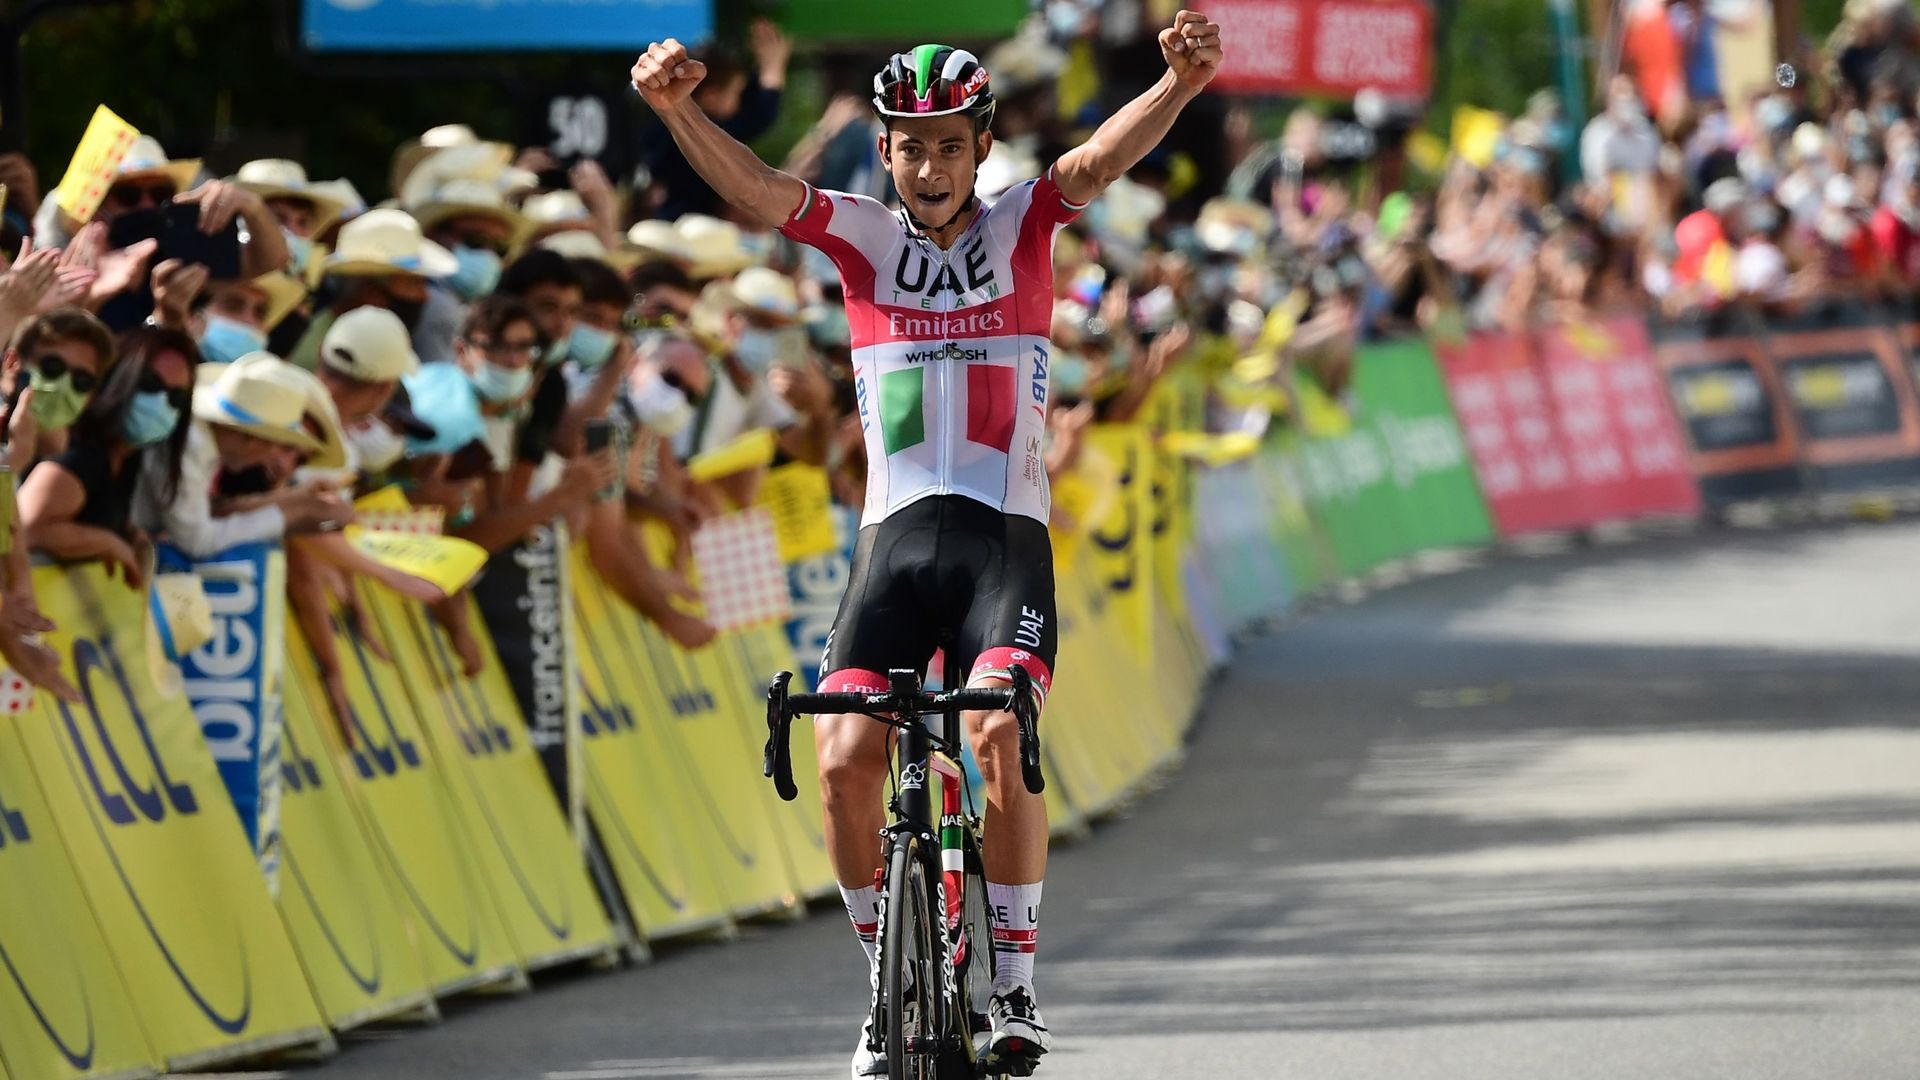 Dauphiné : Formolo remporte la 3e étape après un joli numéro, Roglic toujours en jaune prend du temps à Bernal